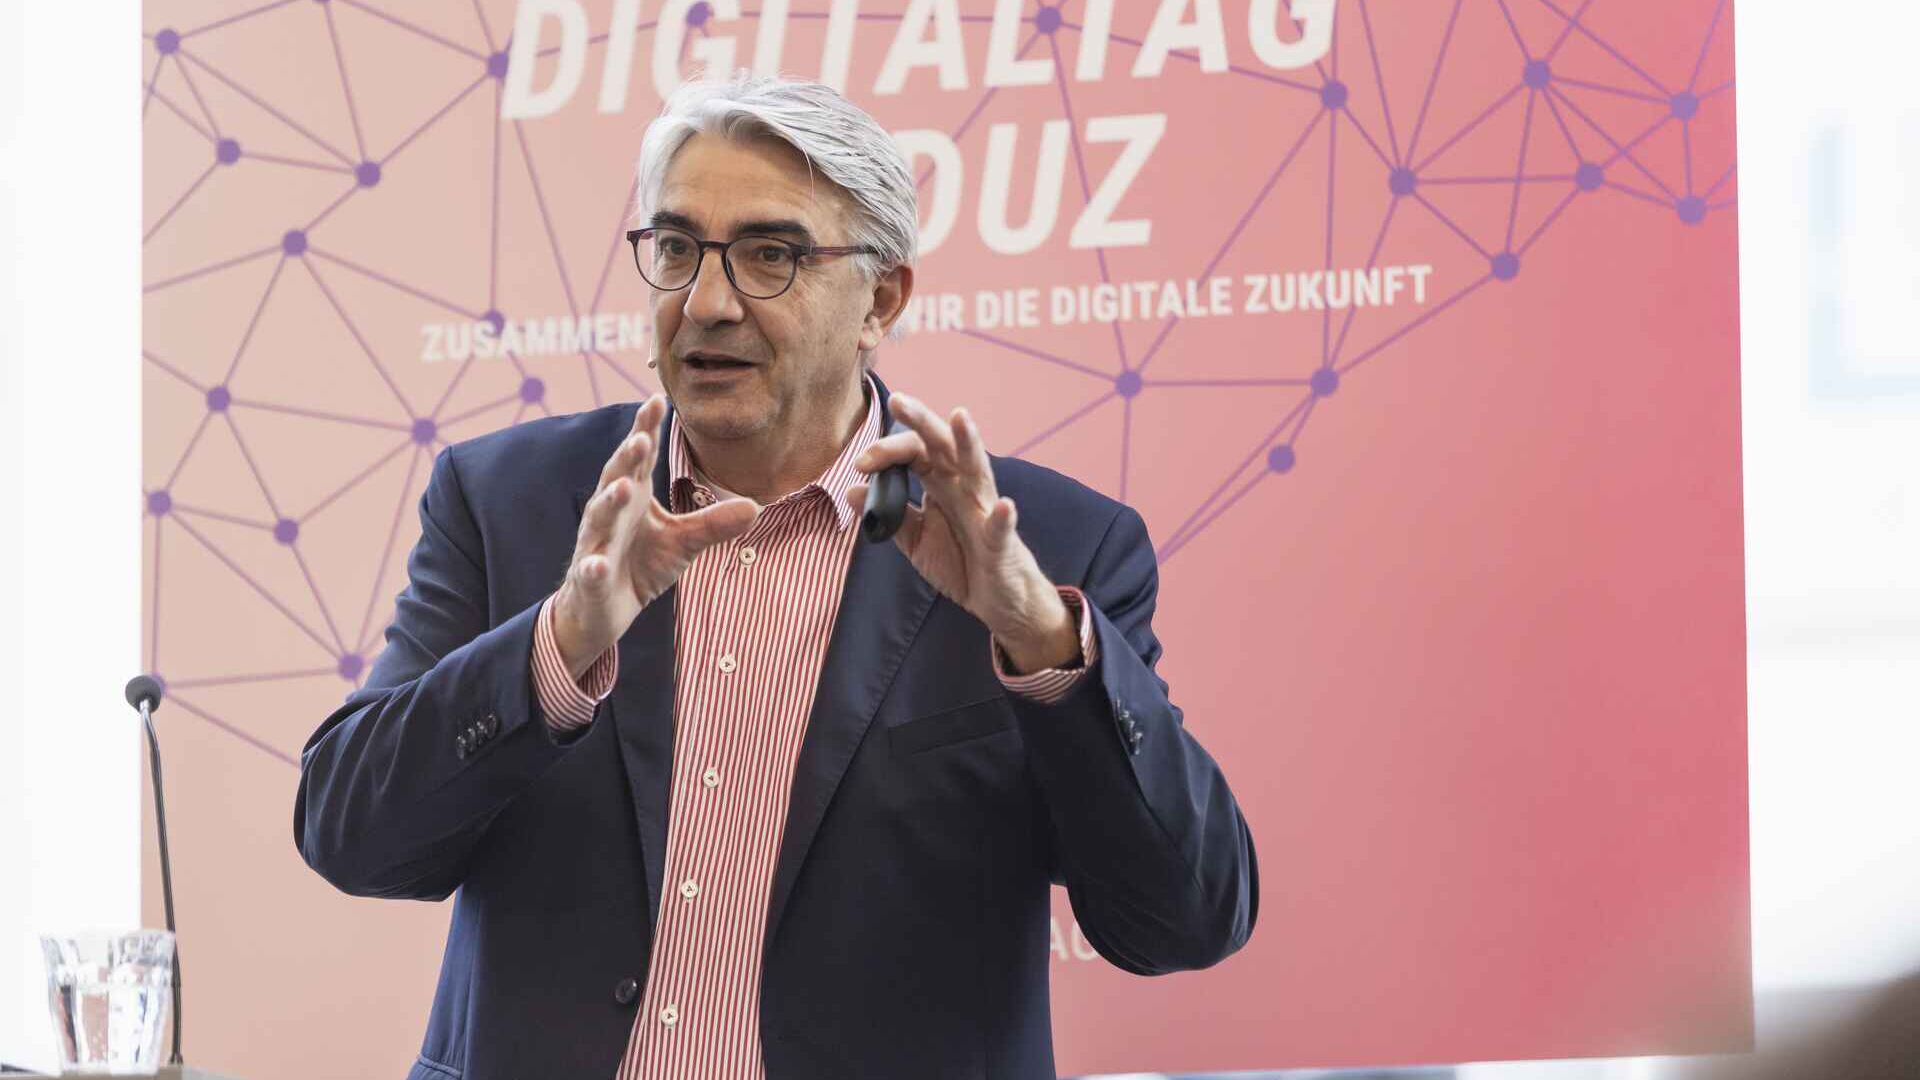 "Digitaltag Vaduz" ble ønsket velkommen av Kunstmuseum i hovedstaden i fyrstedømmet Liechtenstein lørdag 15. oktober 2022